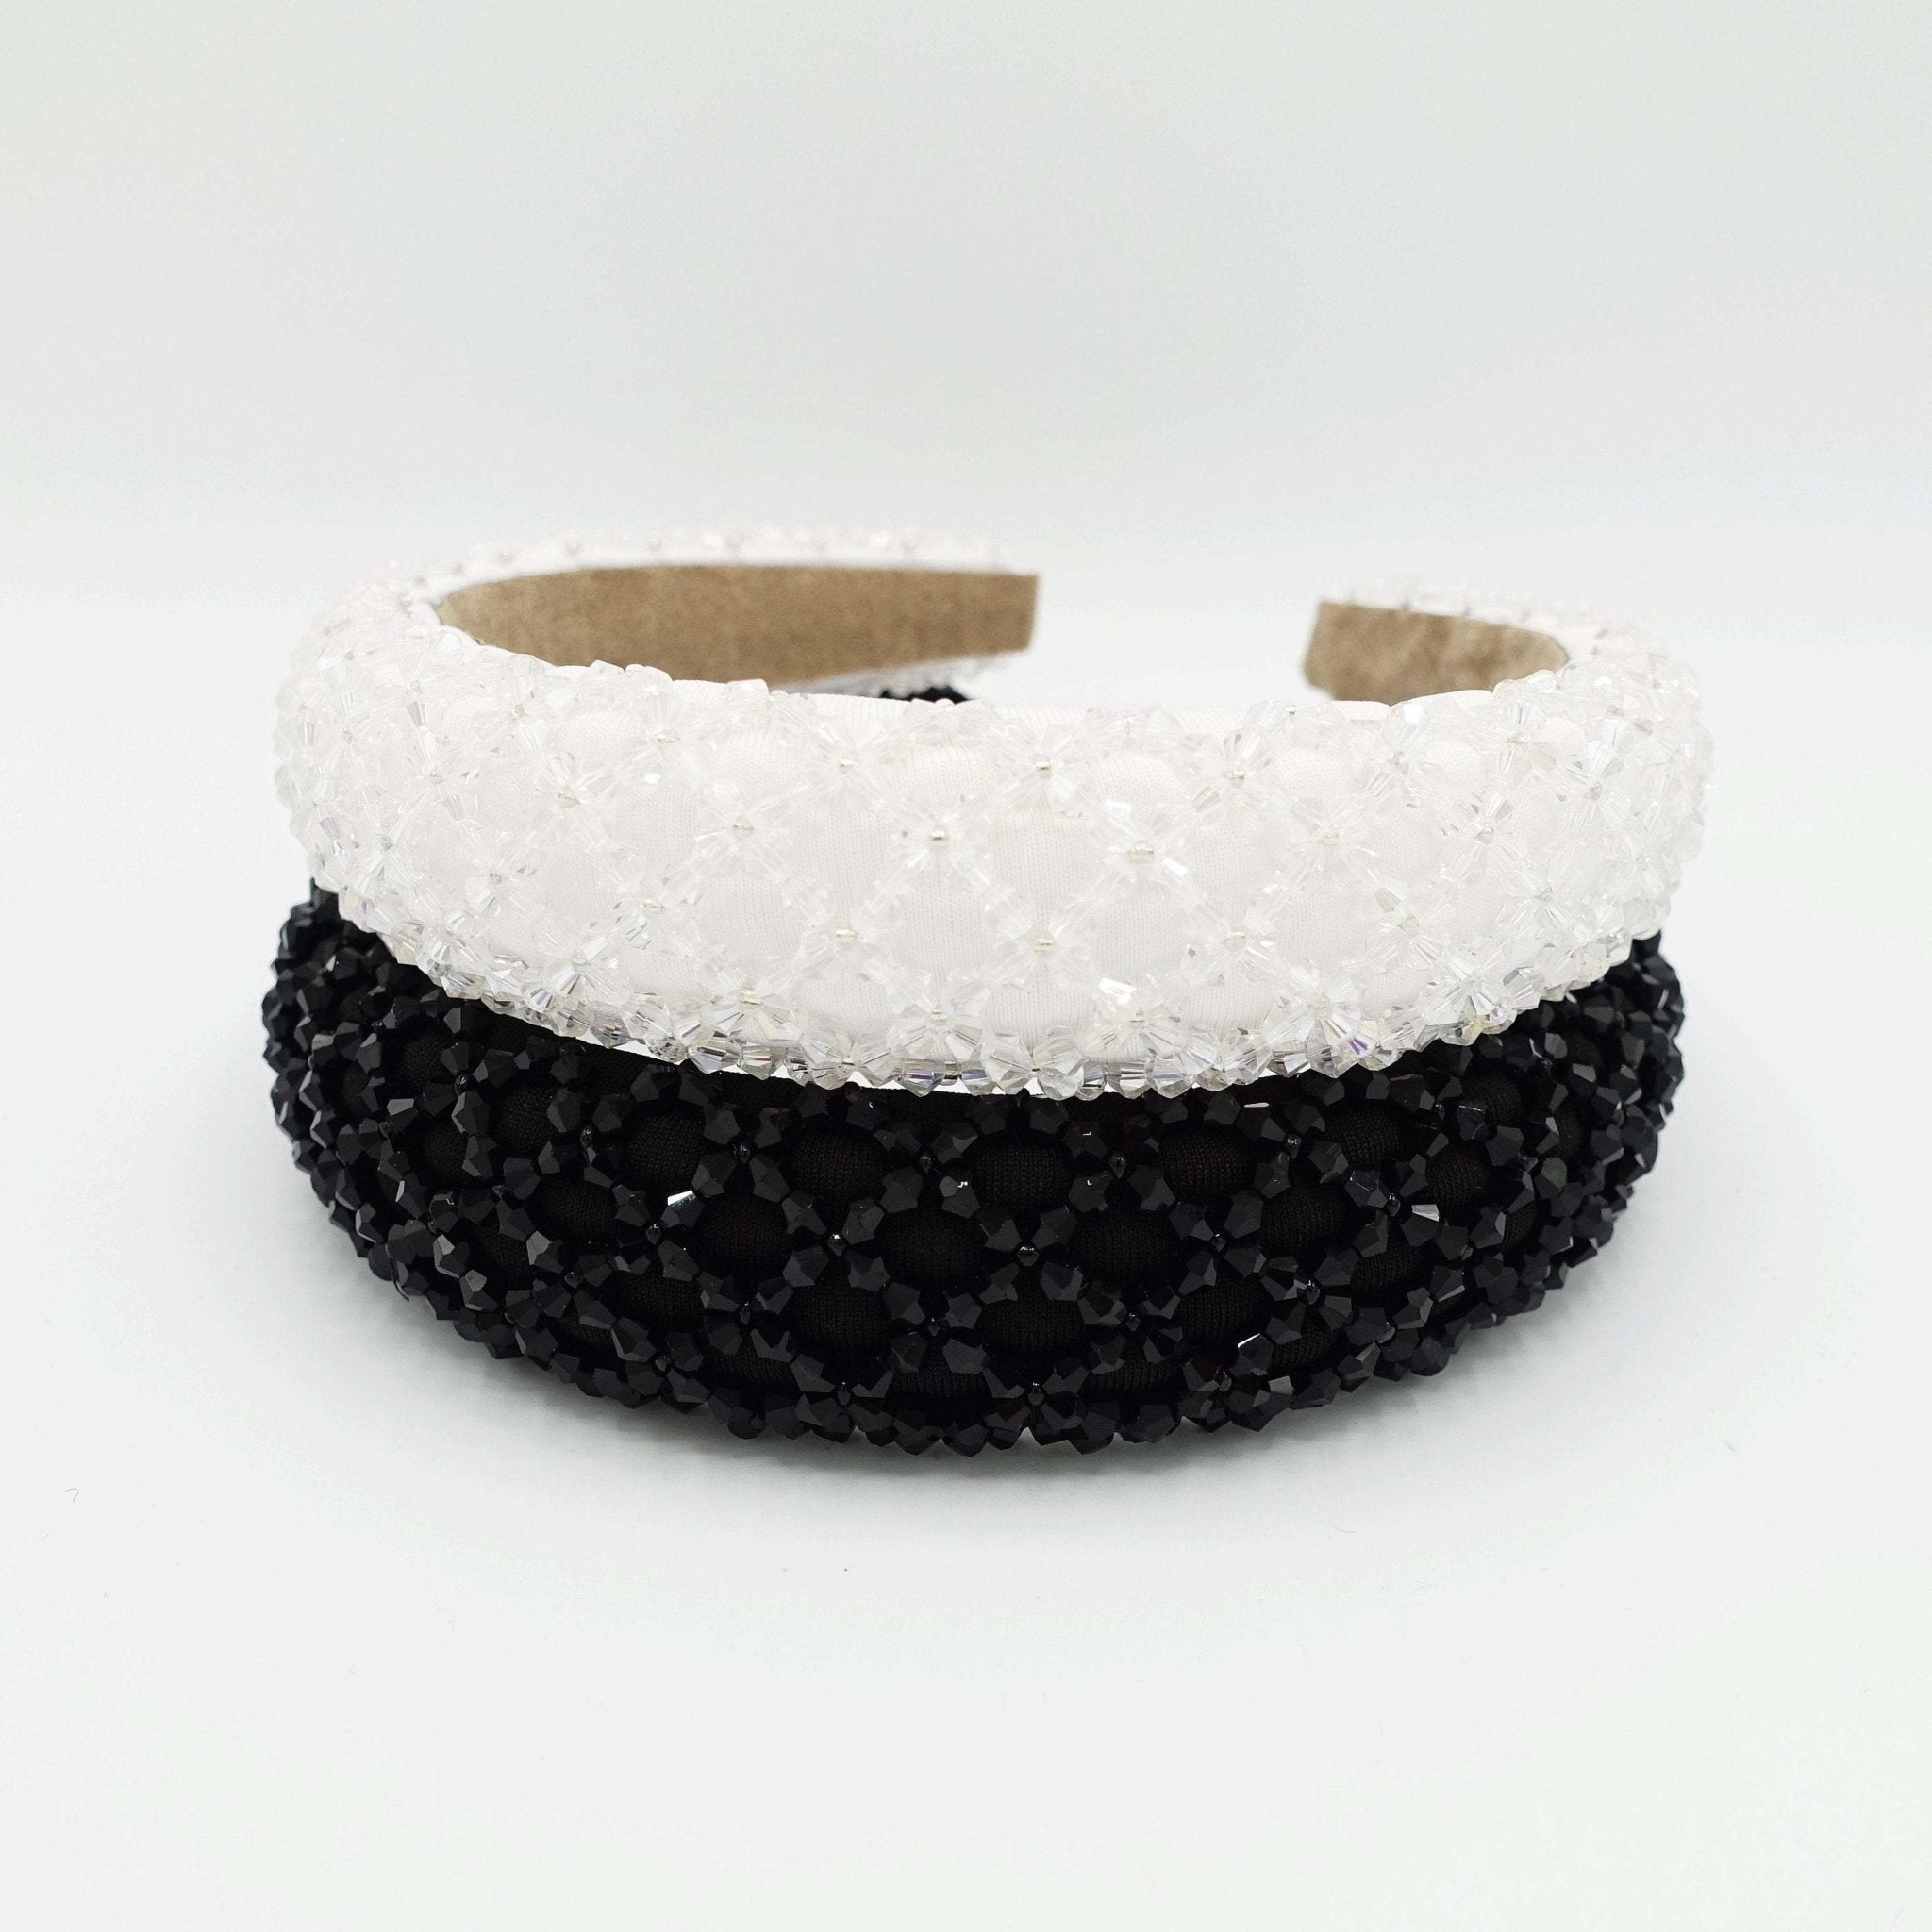 VeryShine beads net embellished padded headband stylish hairband woman hair accessory